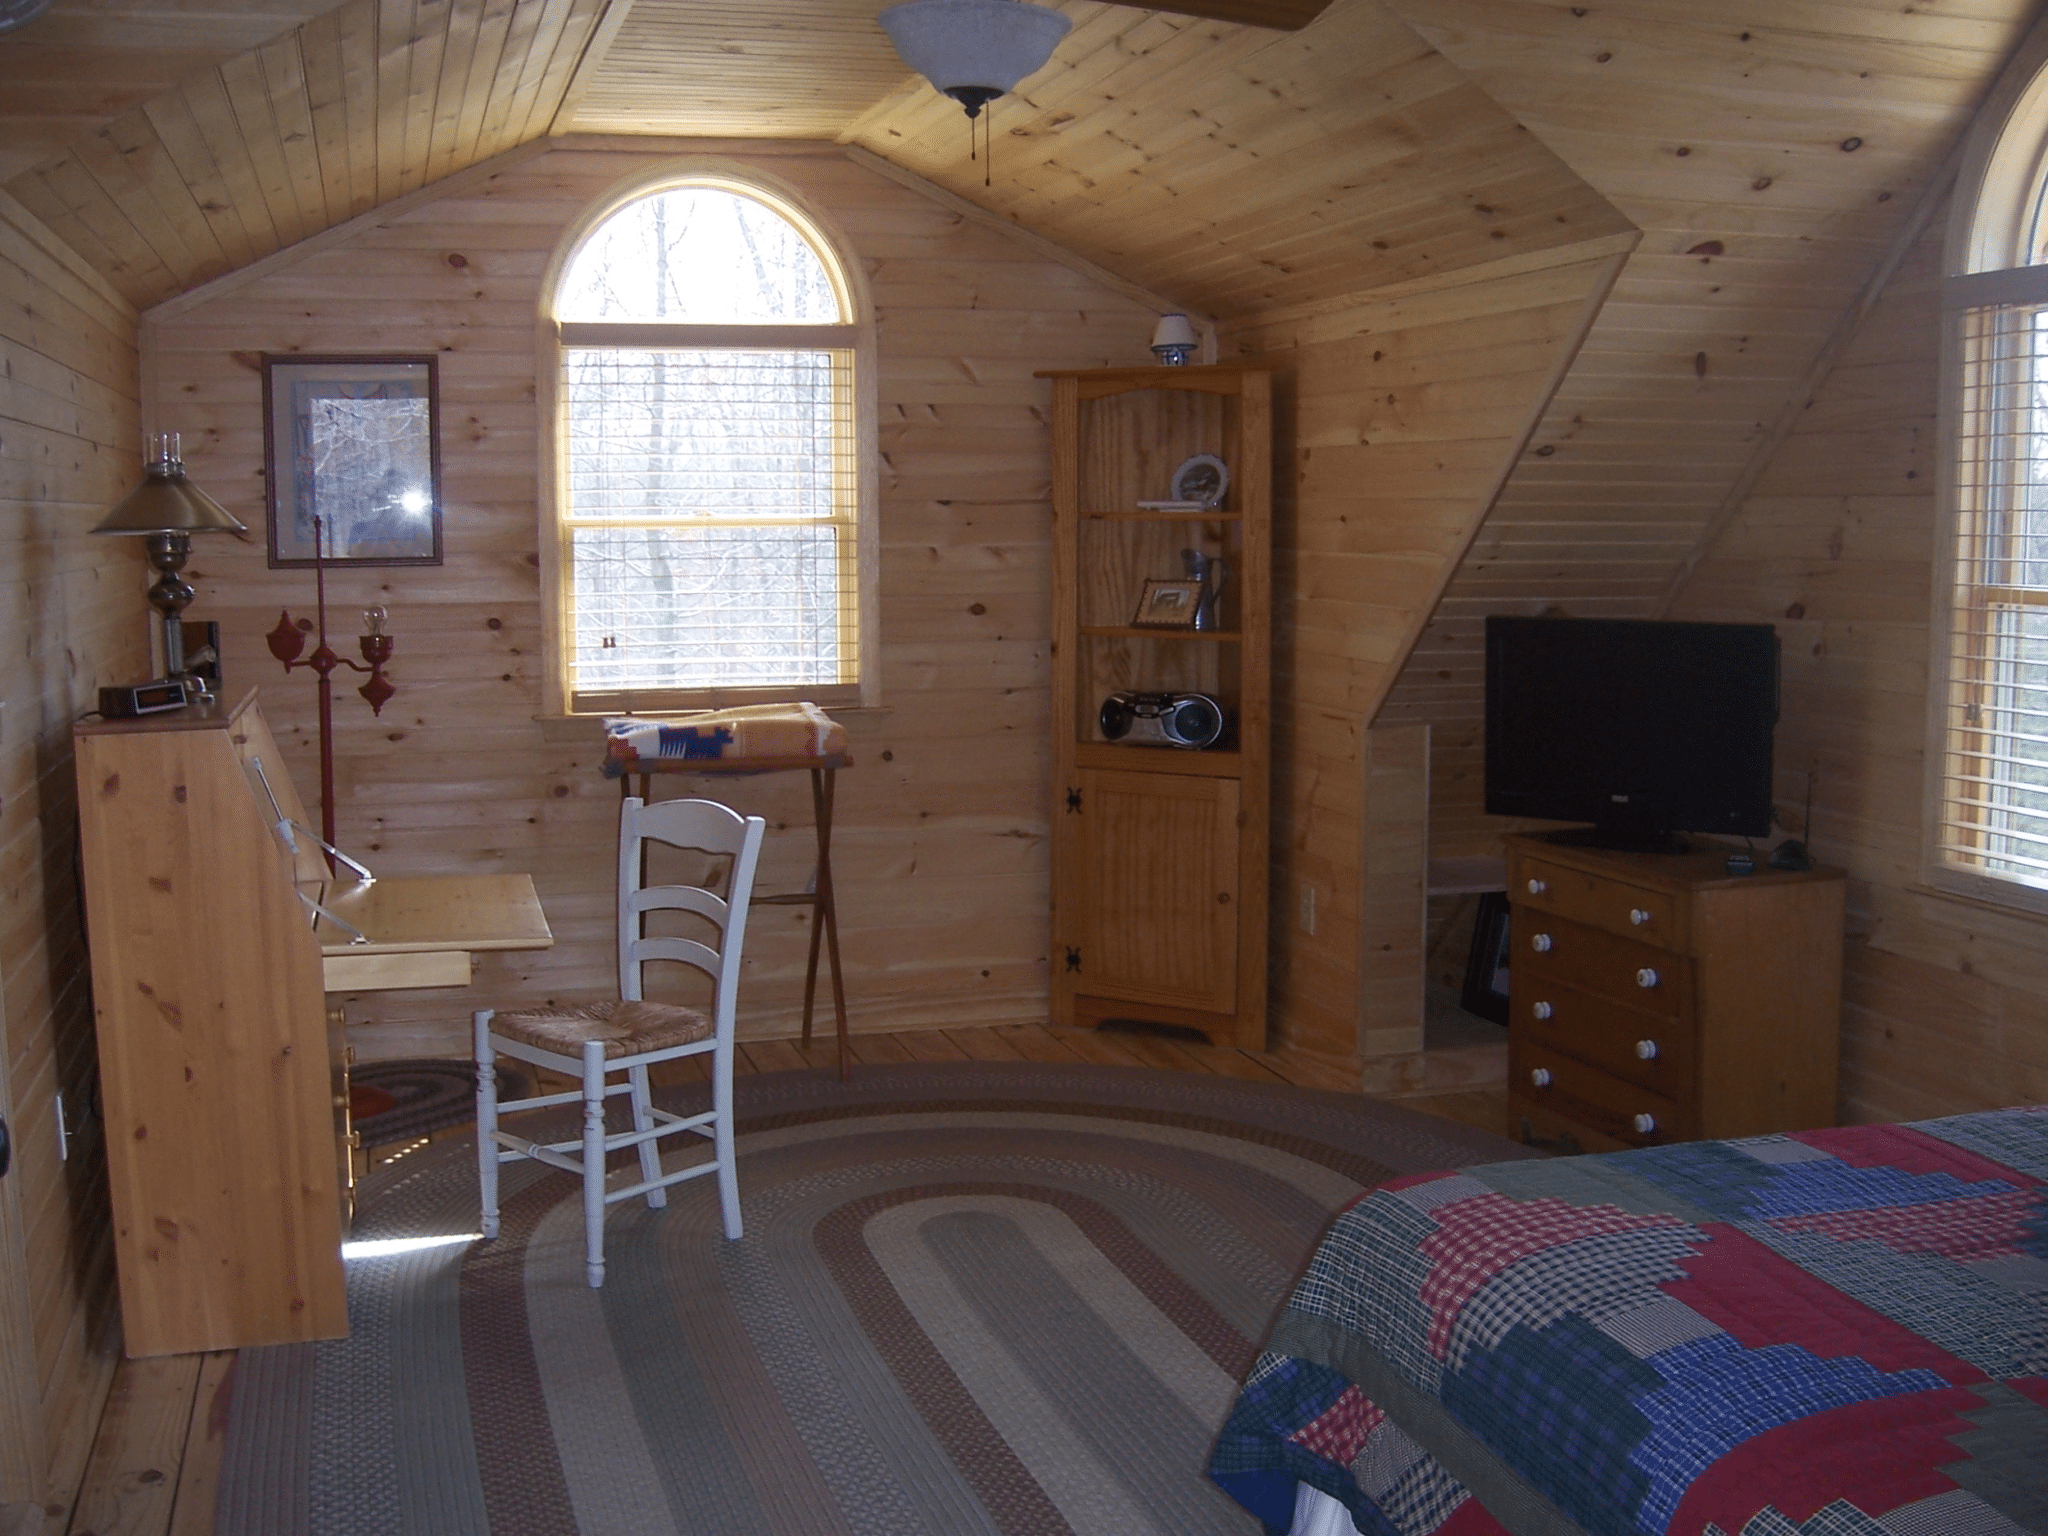 log cabin decor